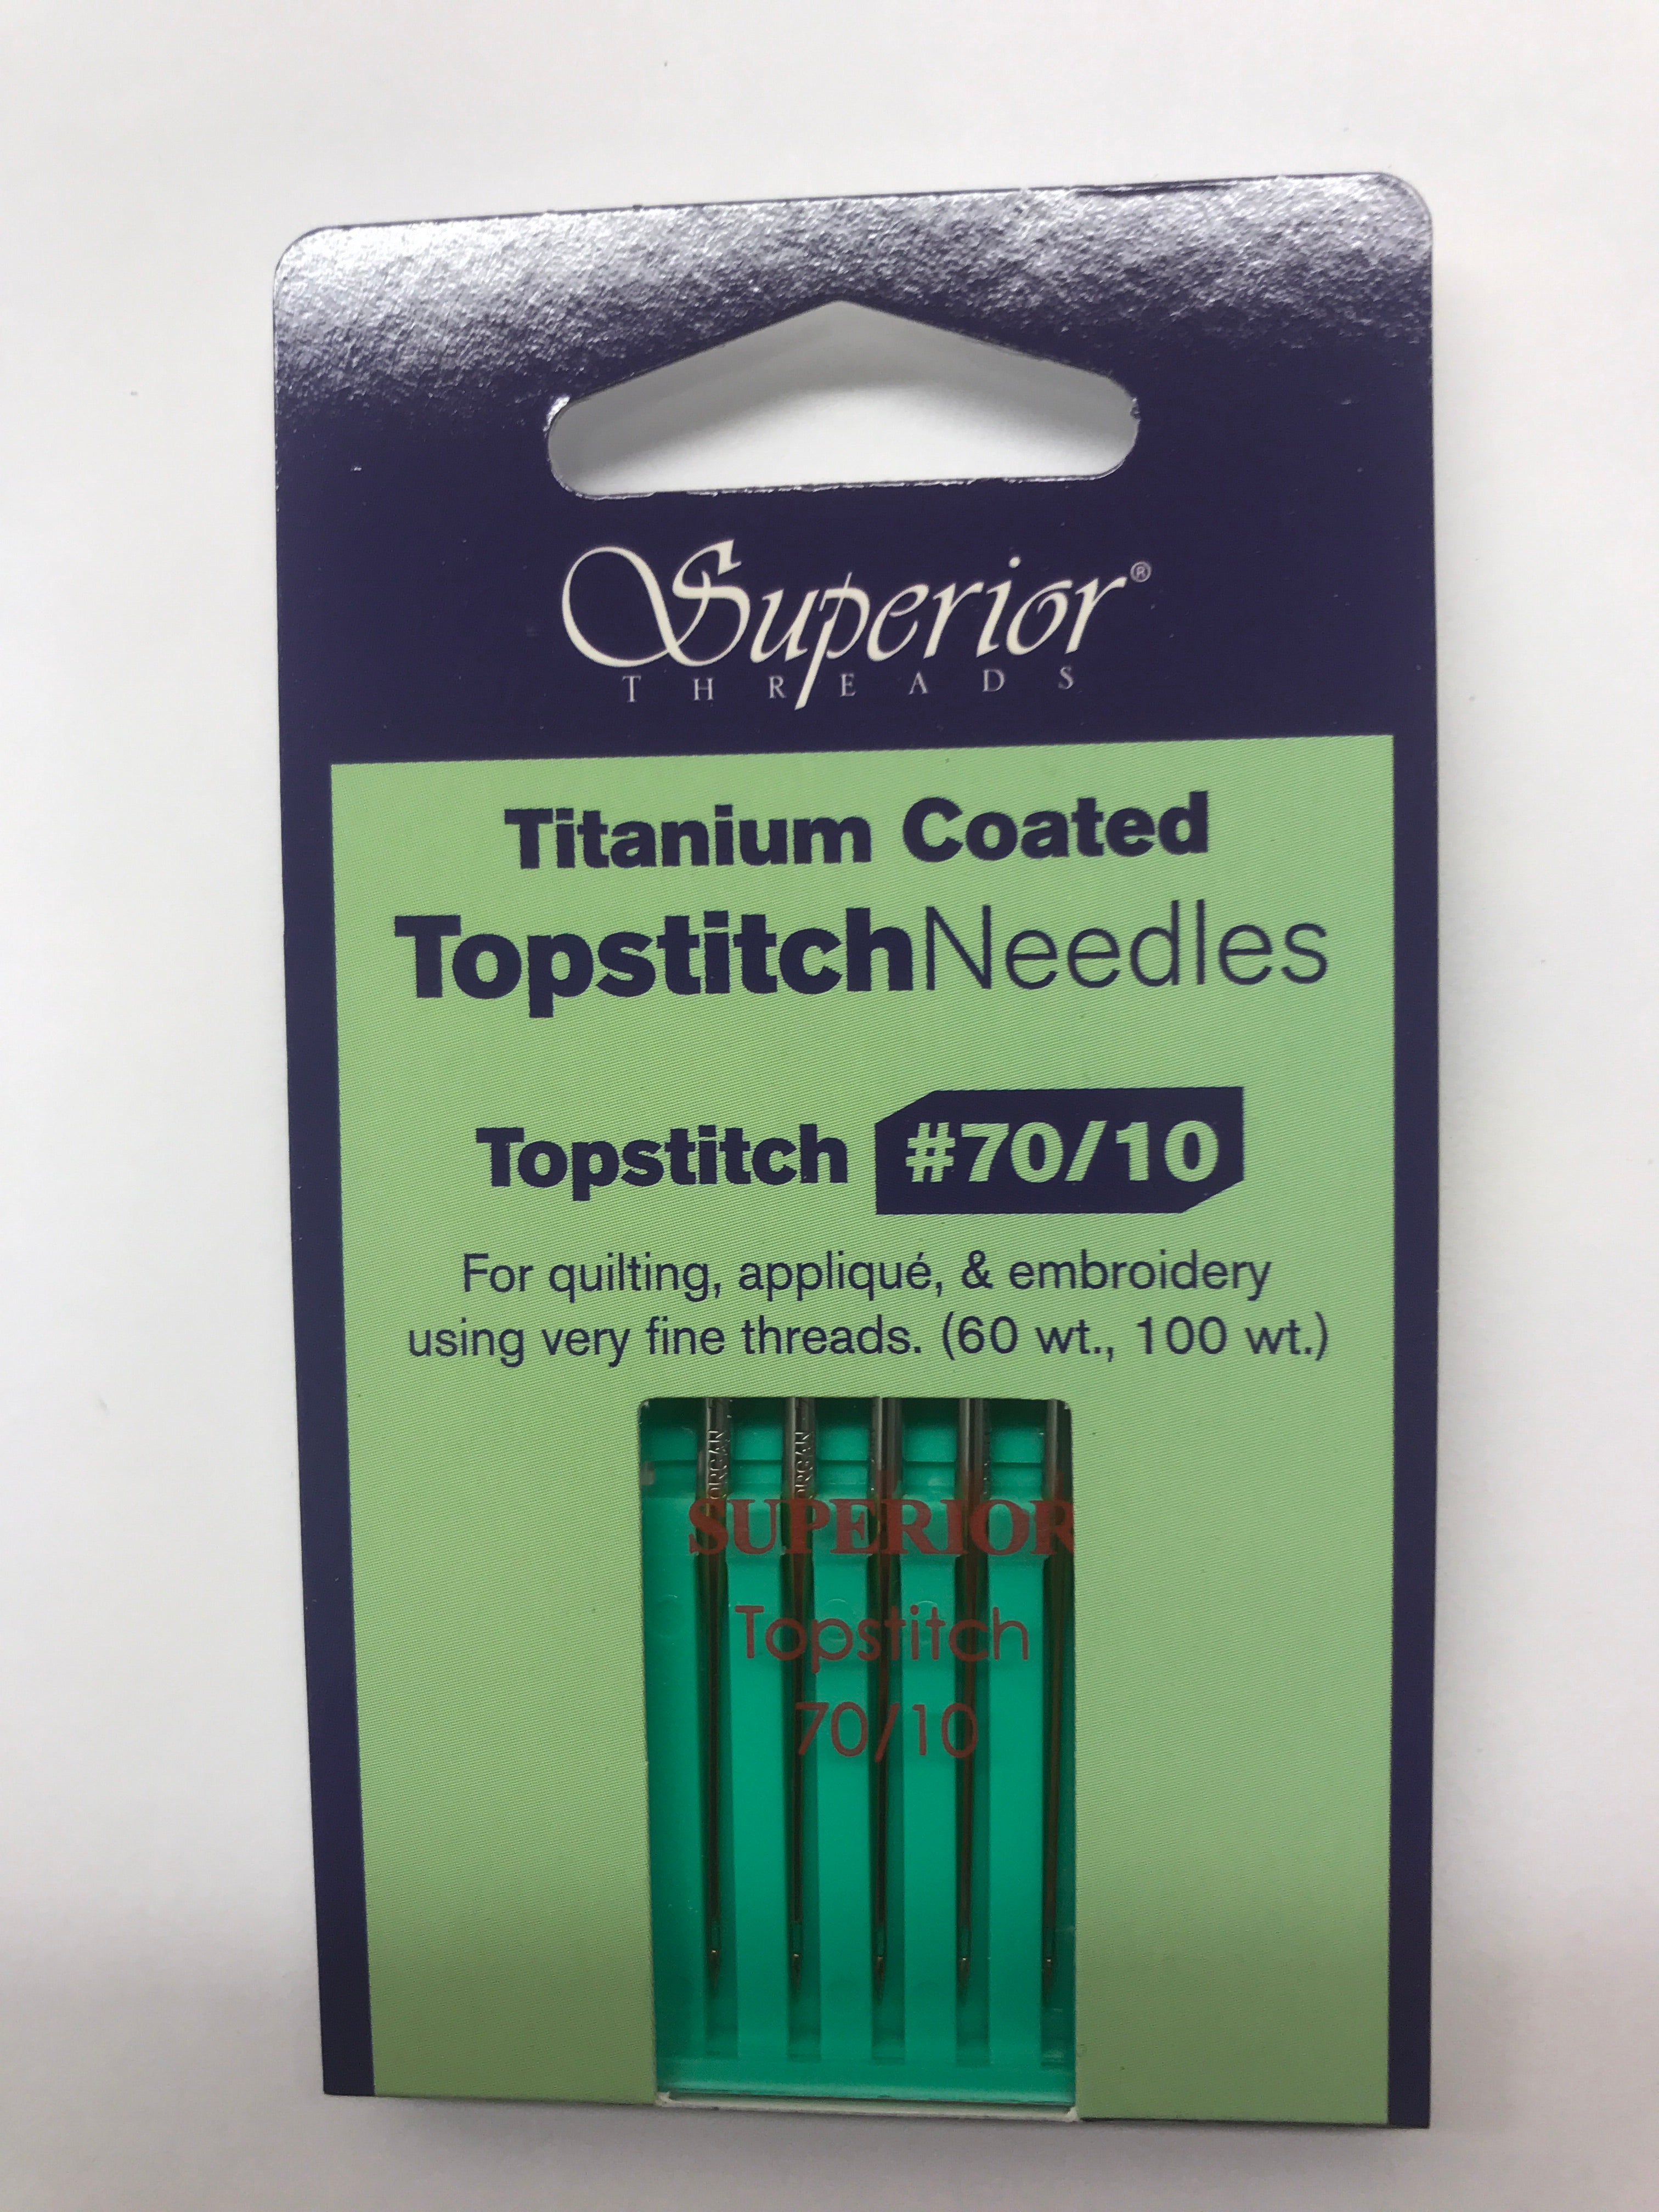 Superior Titanium Coated Topstitch Machine Needles - 70/10 - (5 pack)